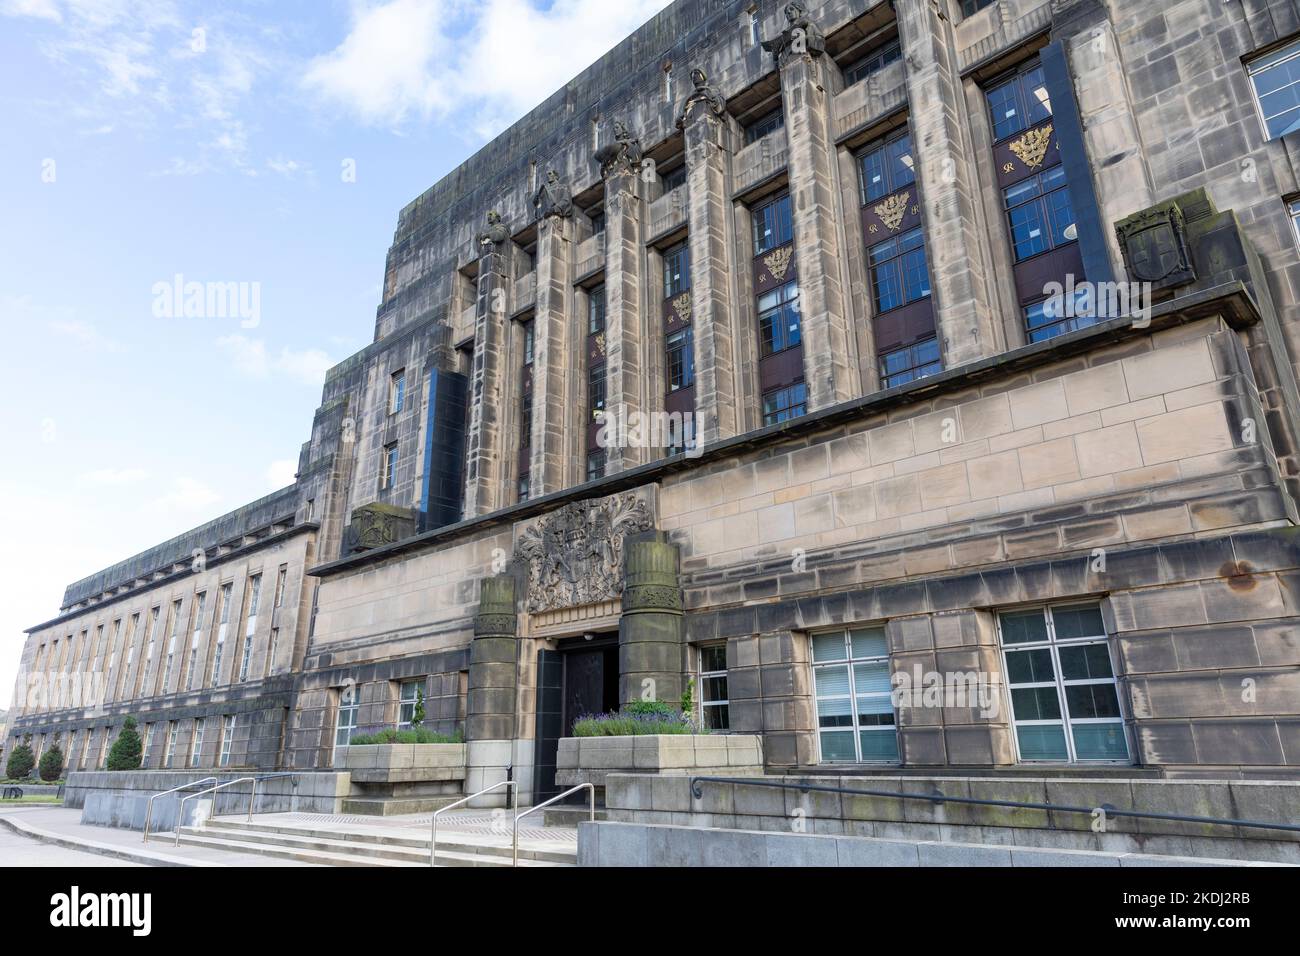 St Andrews House à Édimbourg, siège du gouvernement écossais et immeuble de bureaux sur l'ancien site de la prison de calton, centre-ville d'Édimbourg, Écosse Banque D'Images